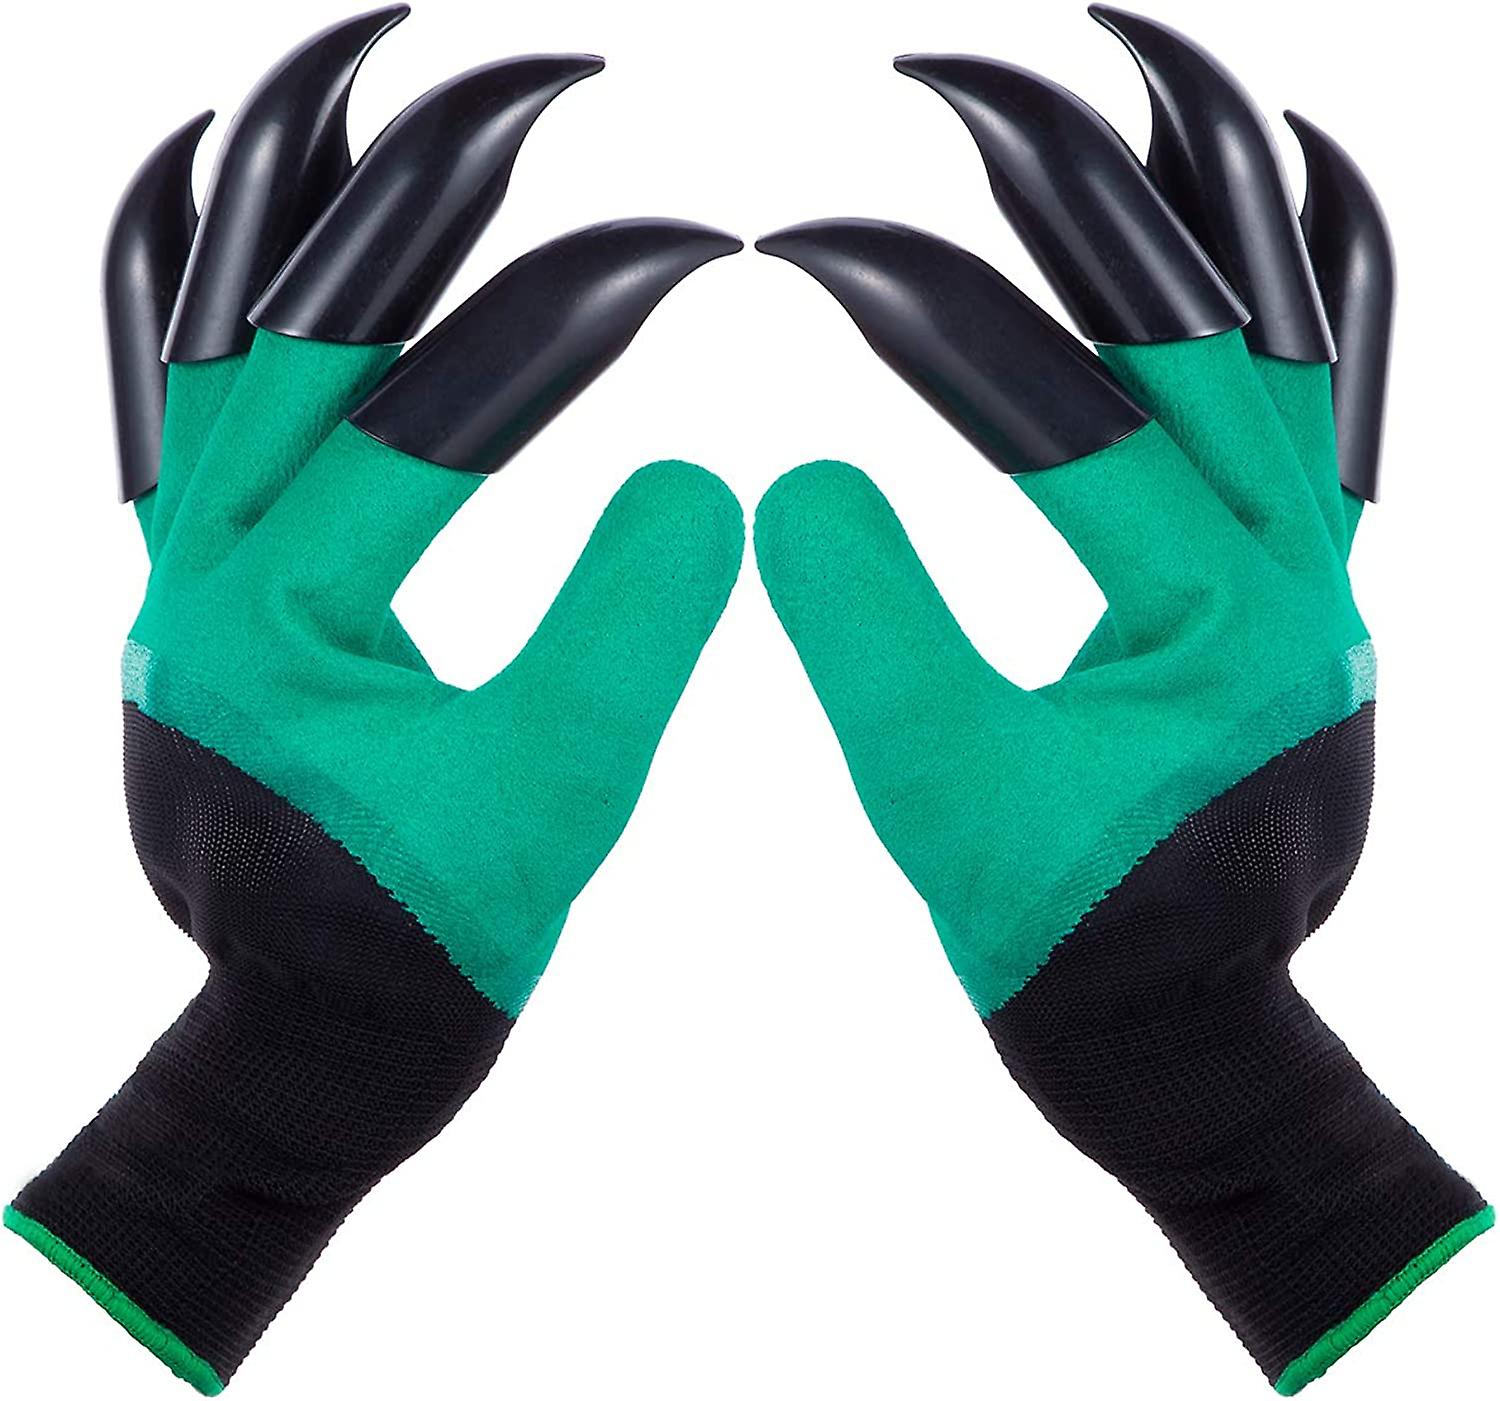 Claw Gardening Gloves for Planting Garden Glove Claws Best Gift for Women